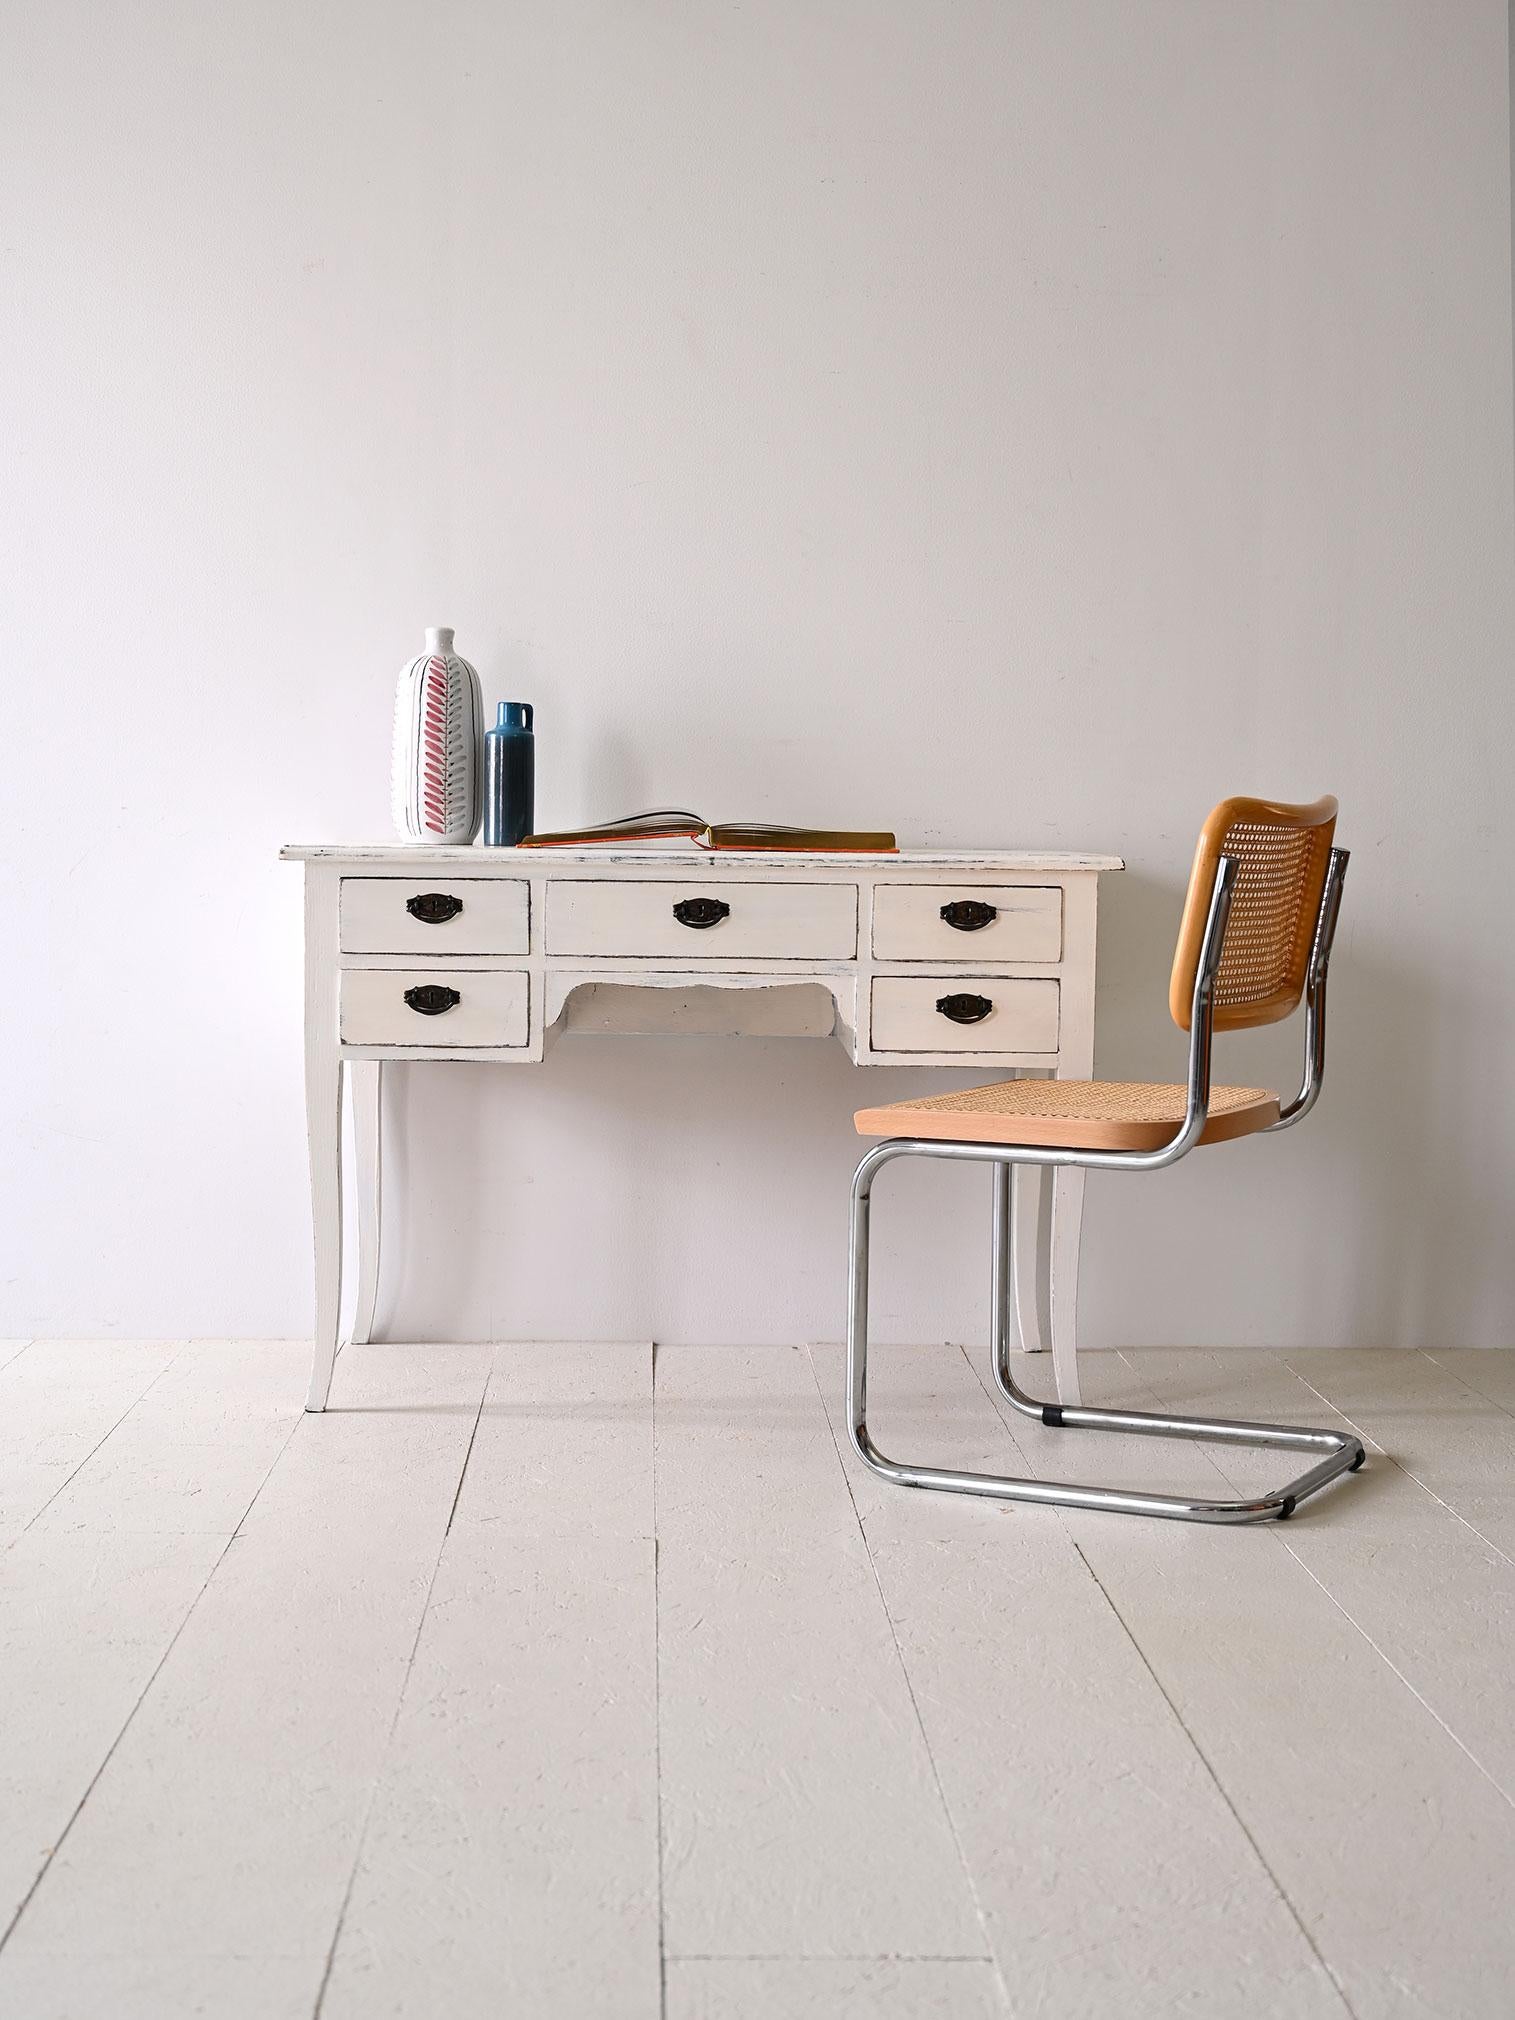 Weißer Schreibtisch aus den 1940er Jahren mit Metallgriffen.

Weißer Schreibtisch im Art-Déco-Stil mit dunkelfarbigen Metallgriffen. Dieser originelle Büroschreibtisch im Vintage-Stil verfügt über eine große Arbeitsfläche mit leicht geschwungenen,